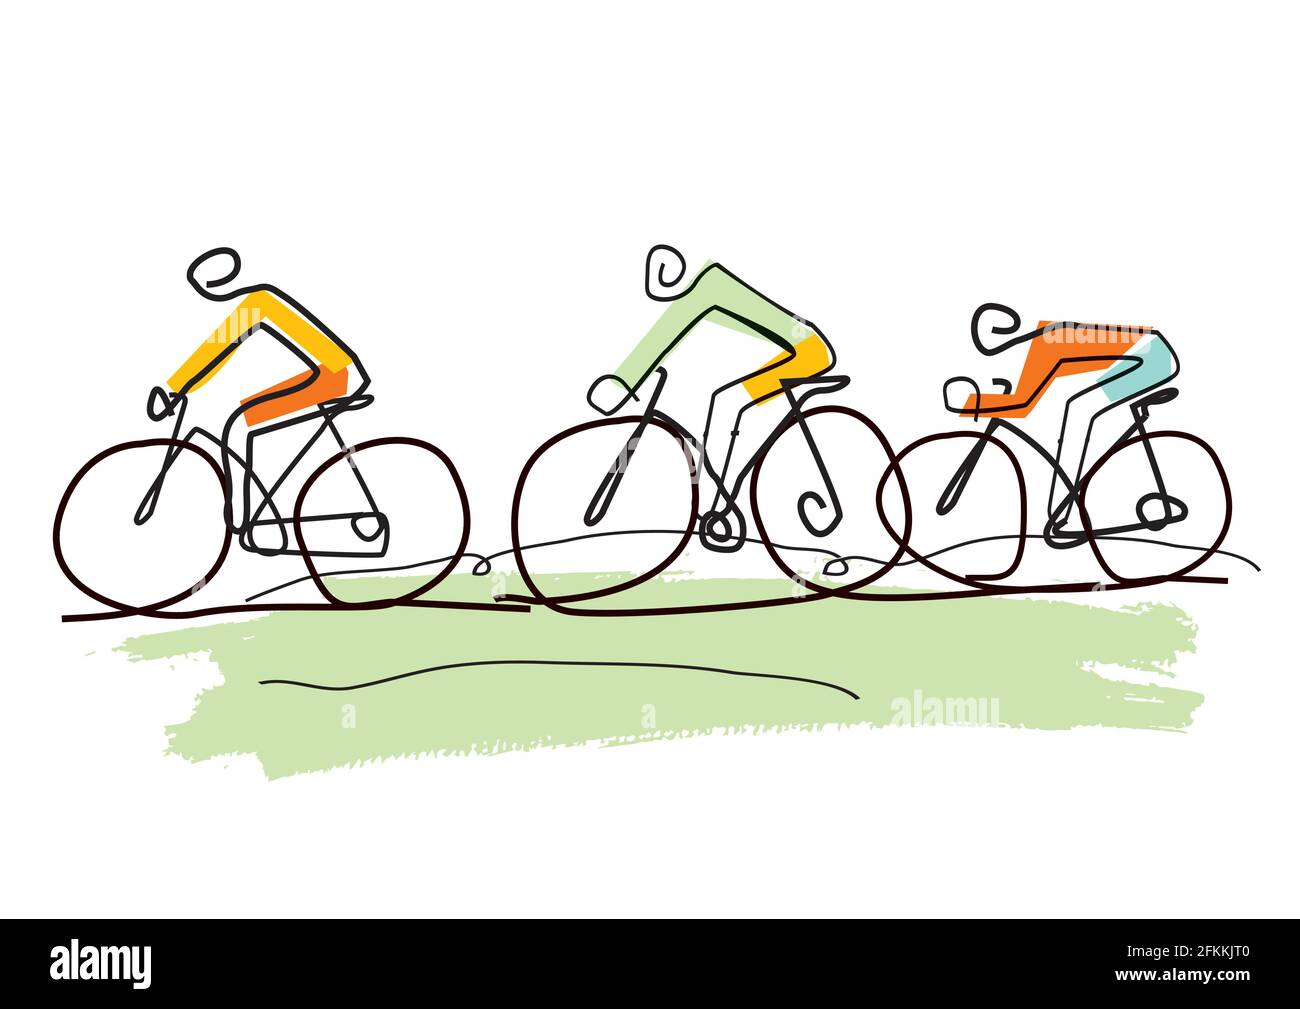 Viaggio in bicicletta, cartoni animati stilizzati line art. Disegno stilizzato di tre ciclisti in un paesaggio astratto. Vettore disponibile. Illustrazione Vettoriale